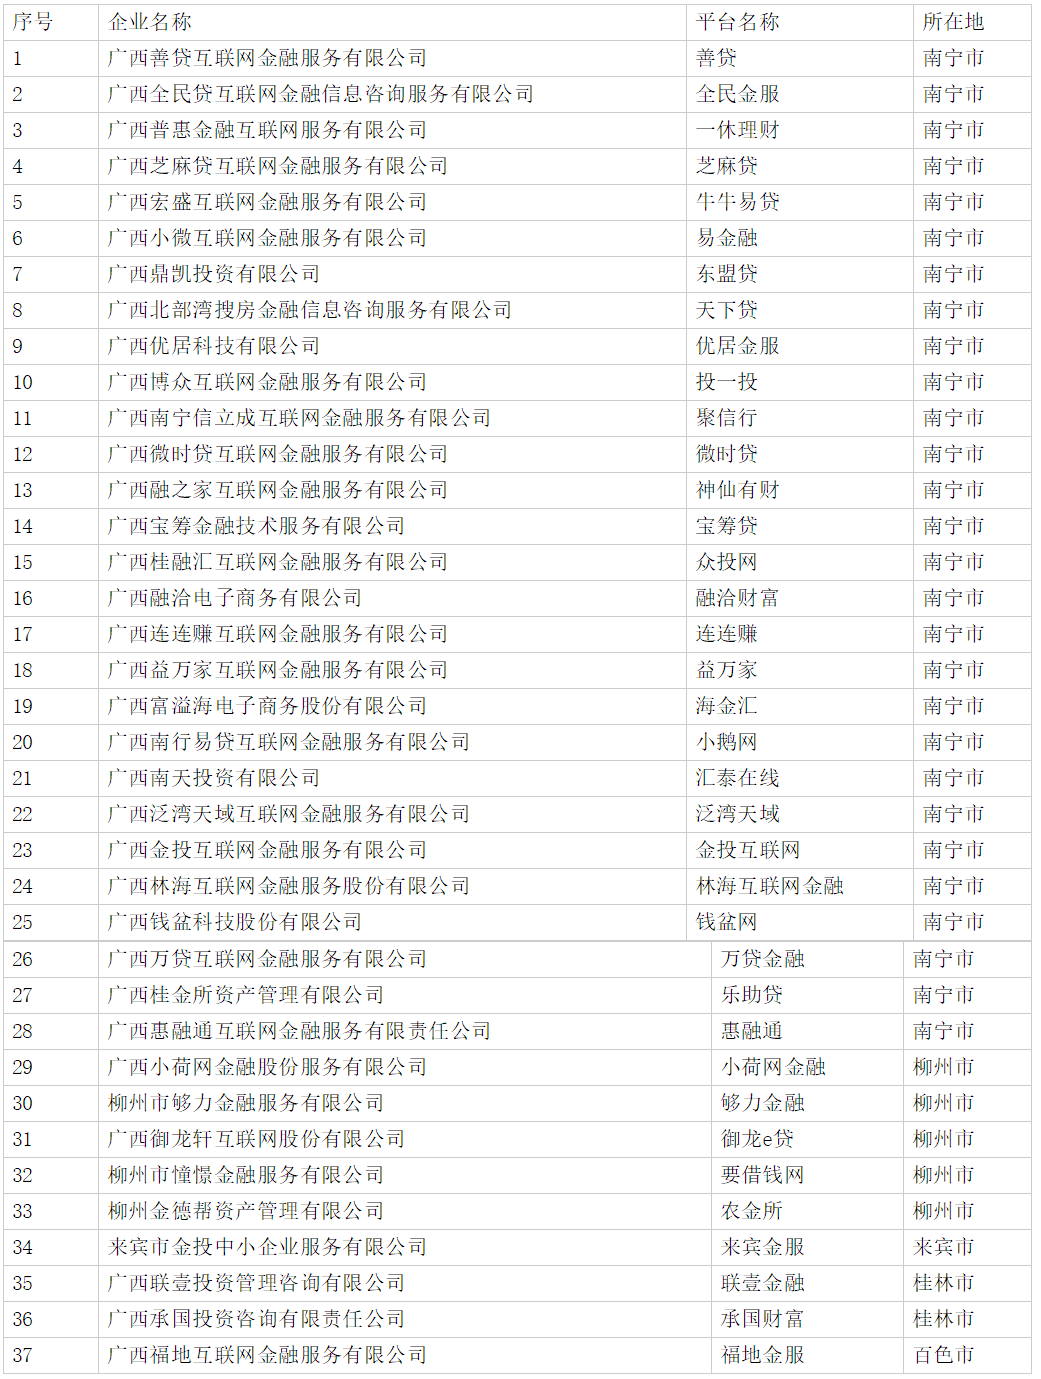 广西通告37家平台退出P2P业务 包含钱盆网等